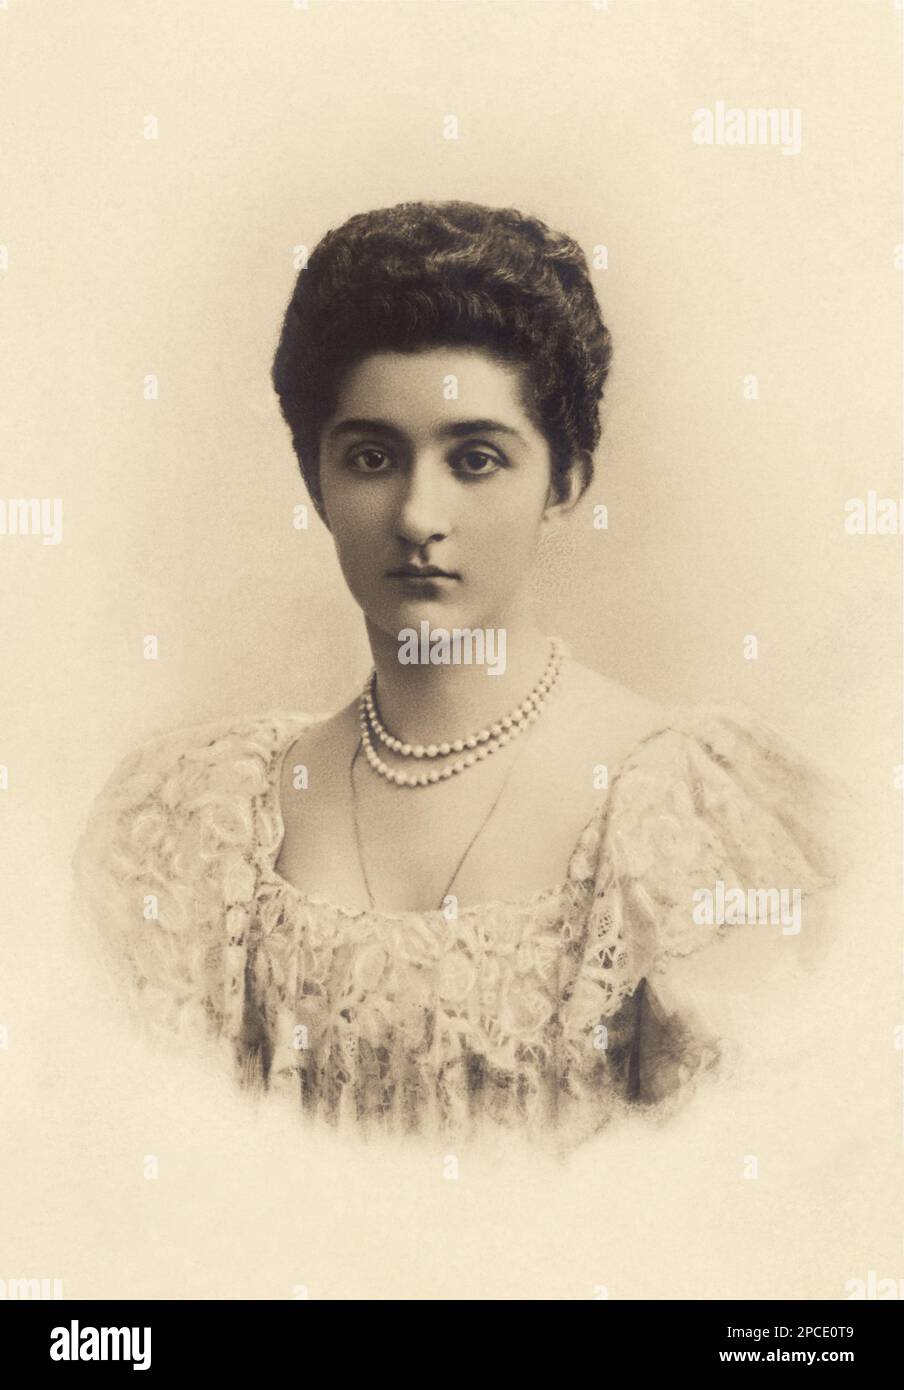 1900 environ , ITALIE : la Reine d'Italie ELENA ( Hélène du Monténégro , 1873 - 1952 ) En portrait officiel - CASA SAVOIA - ITALIA - REALI - Nobiltà ITALIANA - NOBLESSE - ROYALTIES - HISTOIRE - FOTO STORICHE - gioiello - gioielli - bijoux - joaillerie - collier de perles - encolure - decolleté - pizzo - dentelle - BELLE EPOQUE - mignon ---- Archivio GBB Banque D'Images